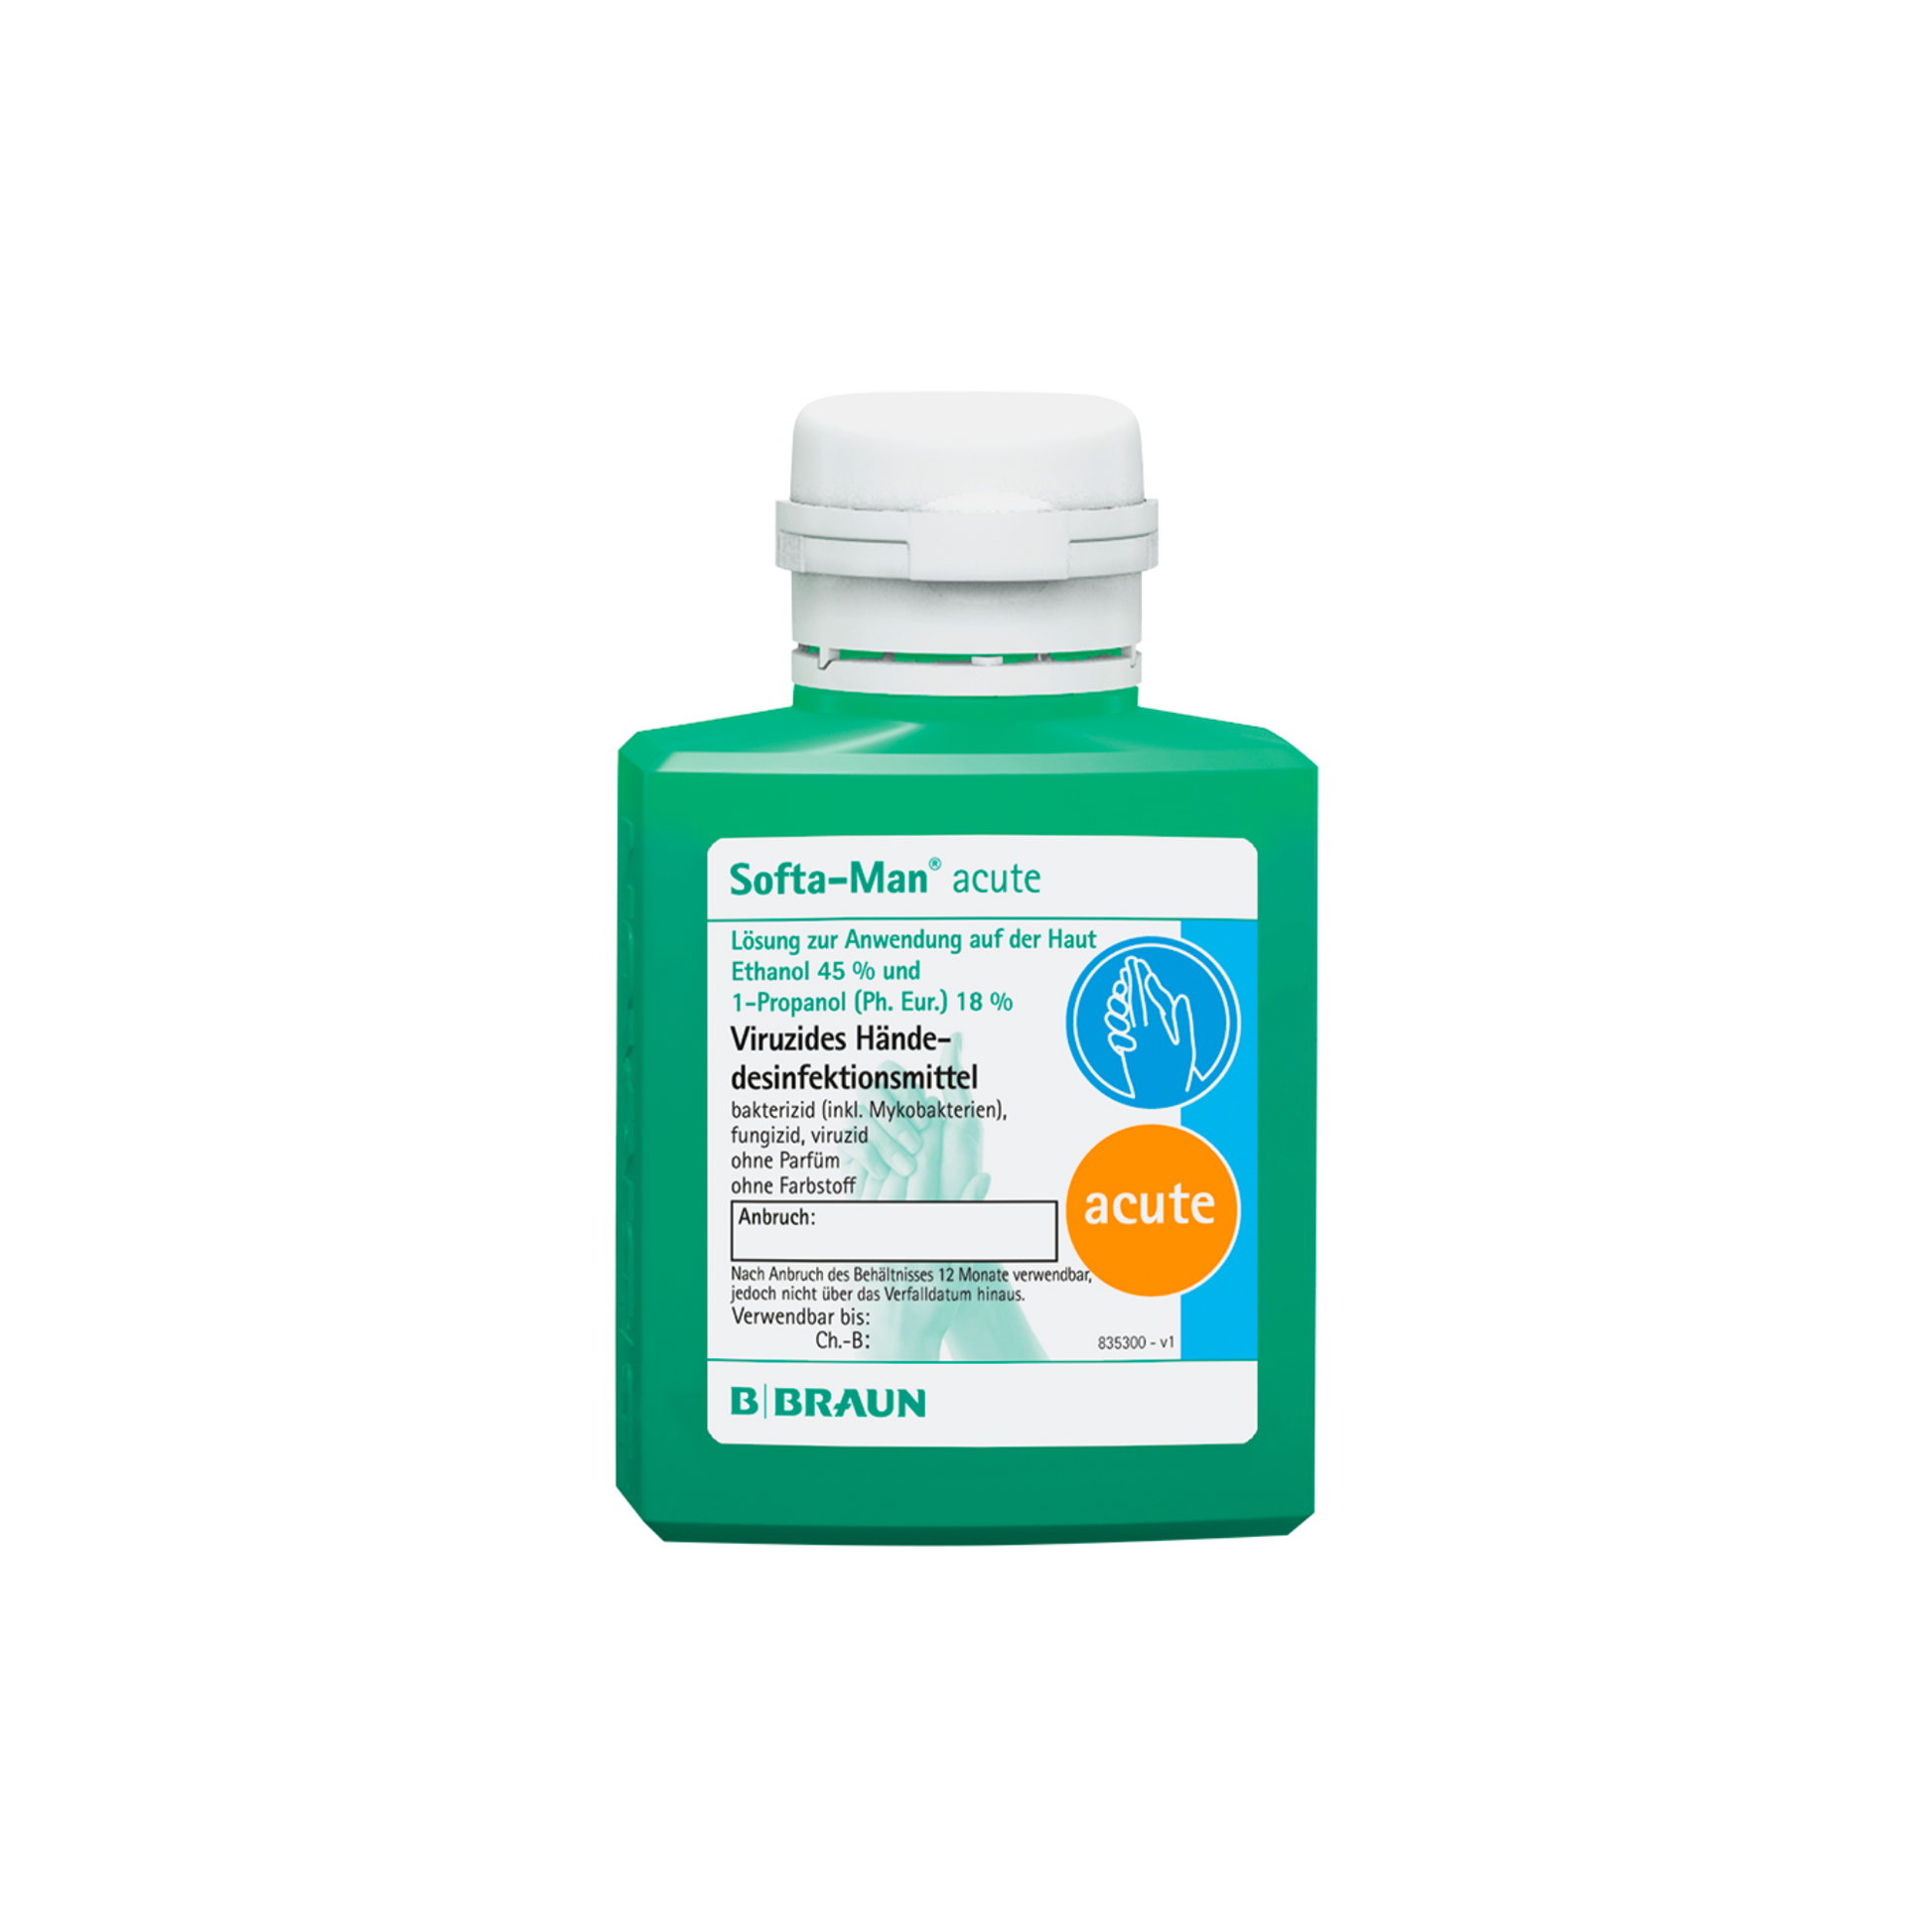 Eine Flasche B. Braun Softa-Man® akut Händedesinfektionsmittel mit deutscher Beschriftung, ausgestattet mit einem weißen Verschluss und einem grünen Etikett mit Anwendungs- und Inhaltsangaben. Die Flasche steht auf einem weißen Hintergrund.